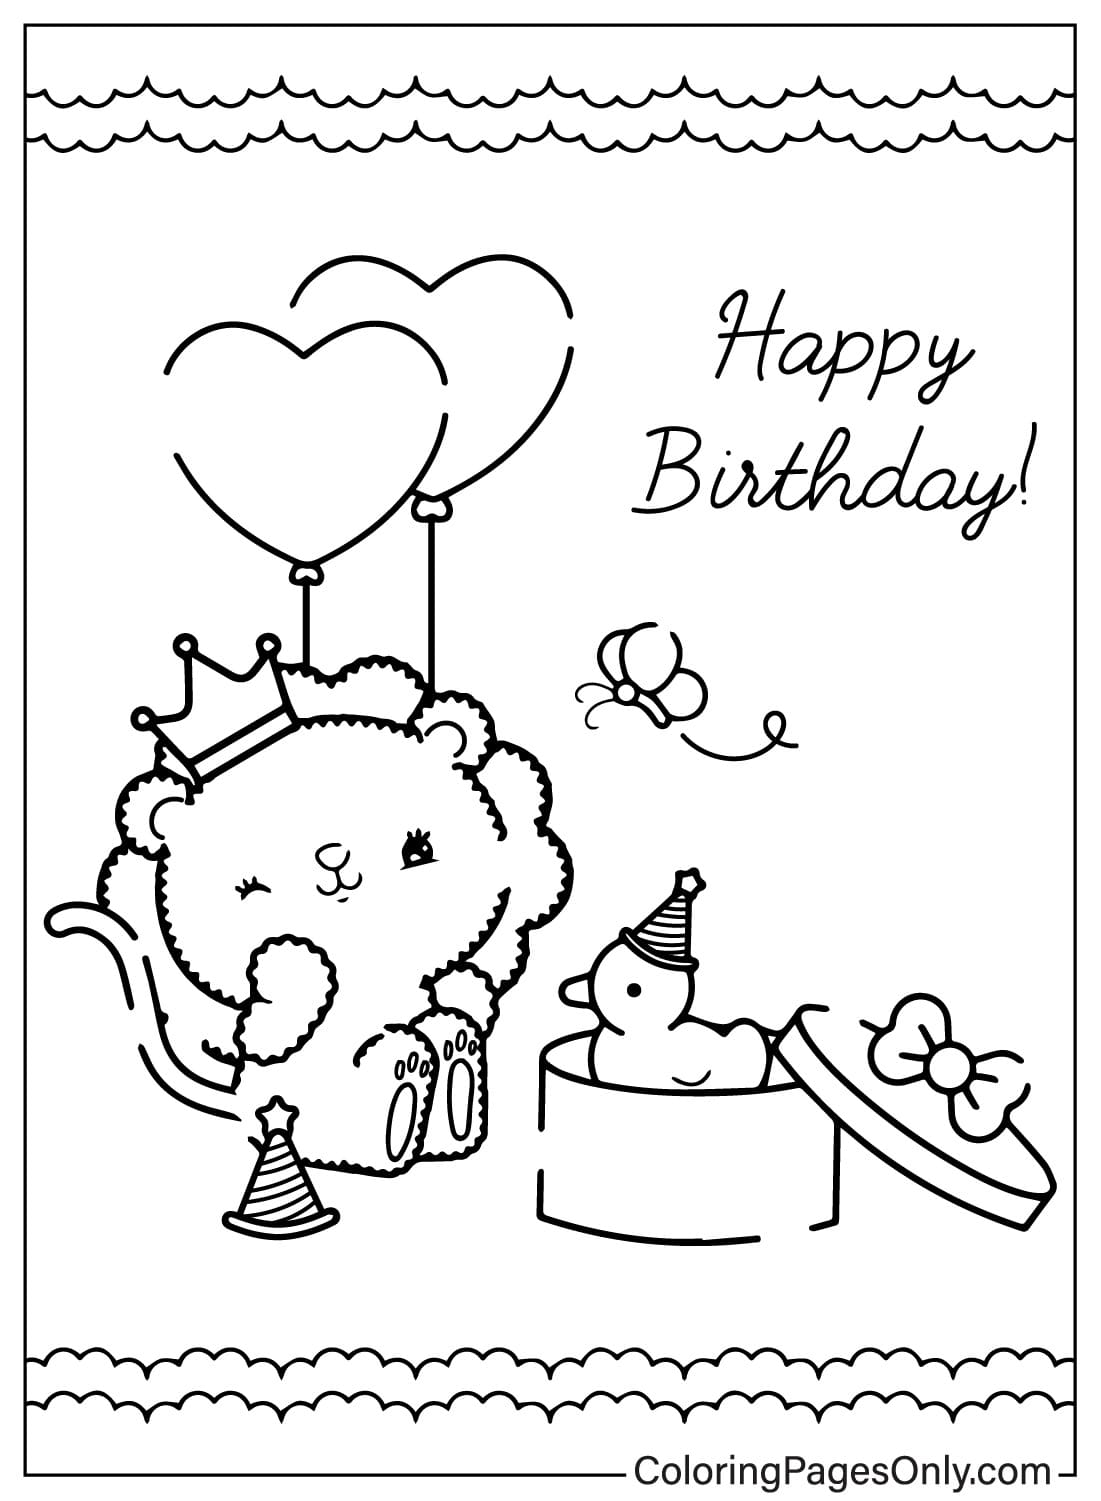 Página para colorir de cartão de feliz aniversário para impressão gratuita em cartão de feliz aniversário